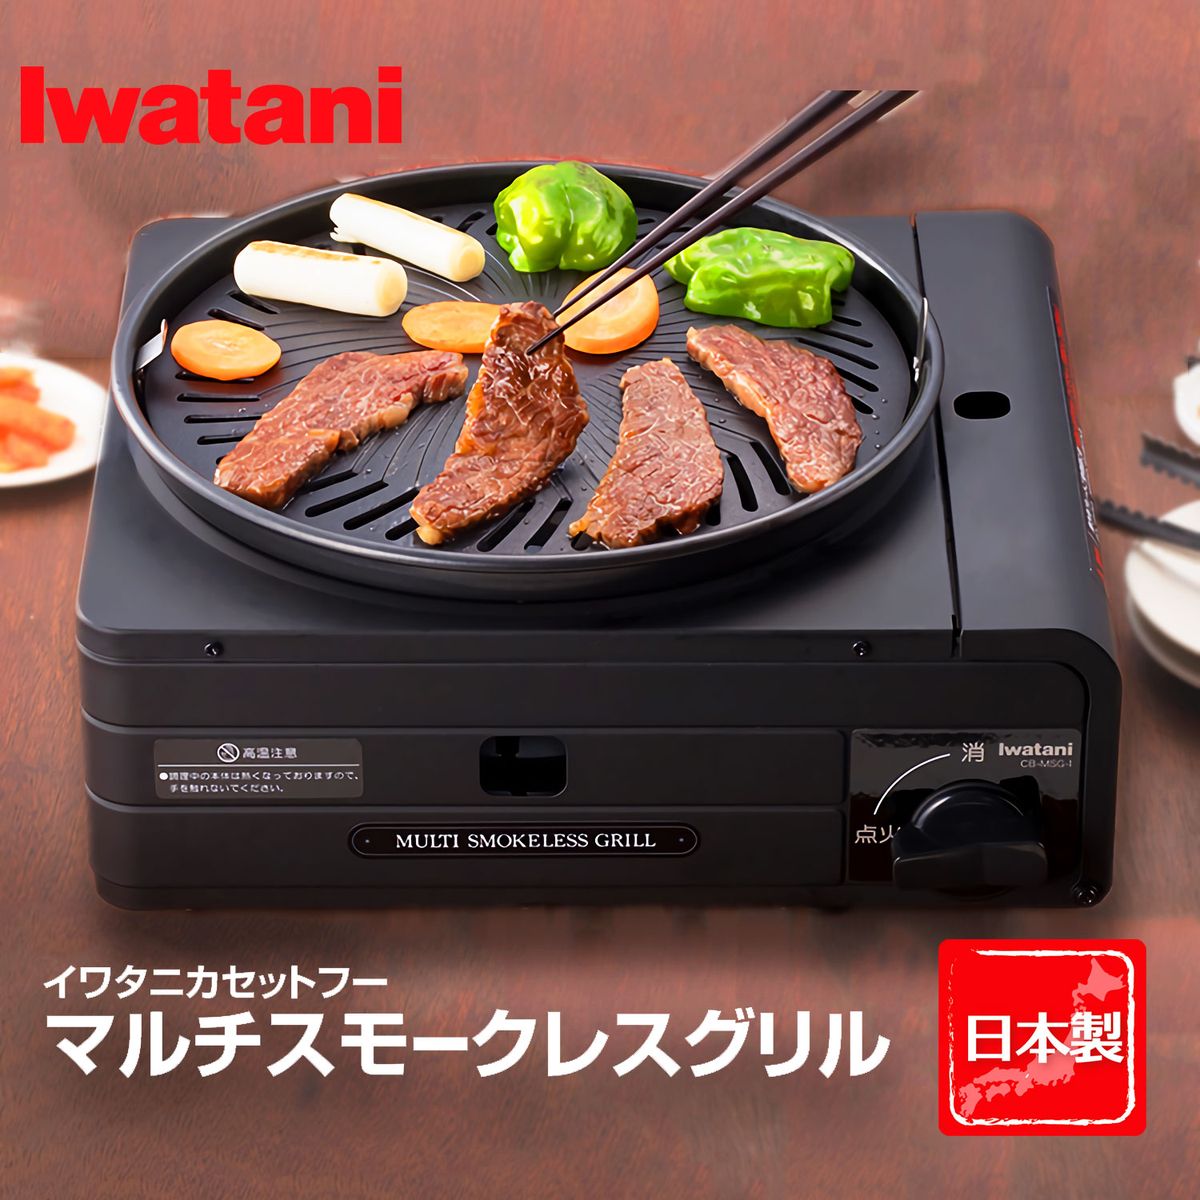 イワタニ カセットコンロ 日本製 カセットフー マルチスモークレスグリル  iwatani ブラック